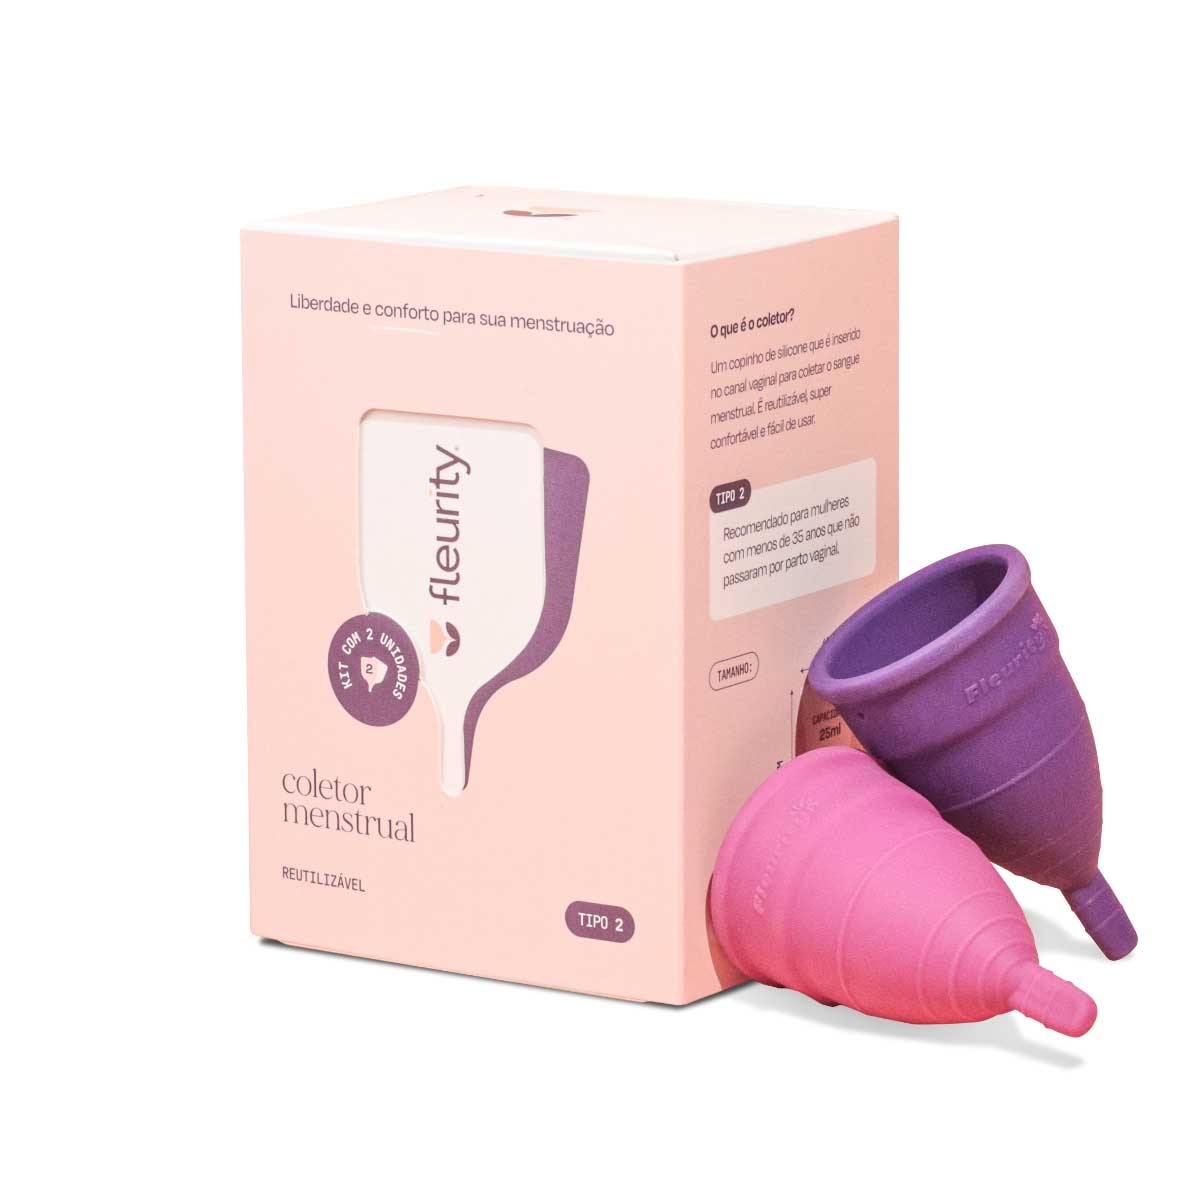 Fleurity - 🚨 Se a sua menstruação tem algum tipo de cheiro ou odor  característico que você nãooooo goste, é porque você, AINDA, não conhece o  coletor menstrual! 😉 ⠀⠀⠀⠀⠀⠀⠀⠀⠀ 👉🏻Se liga!